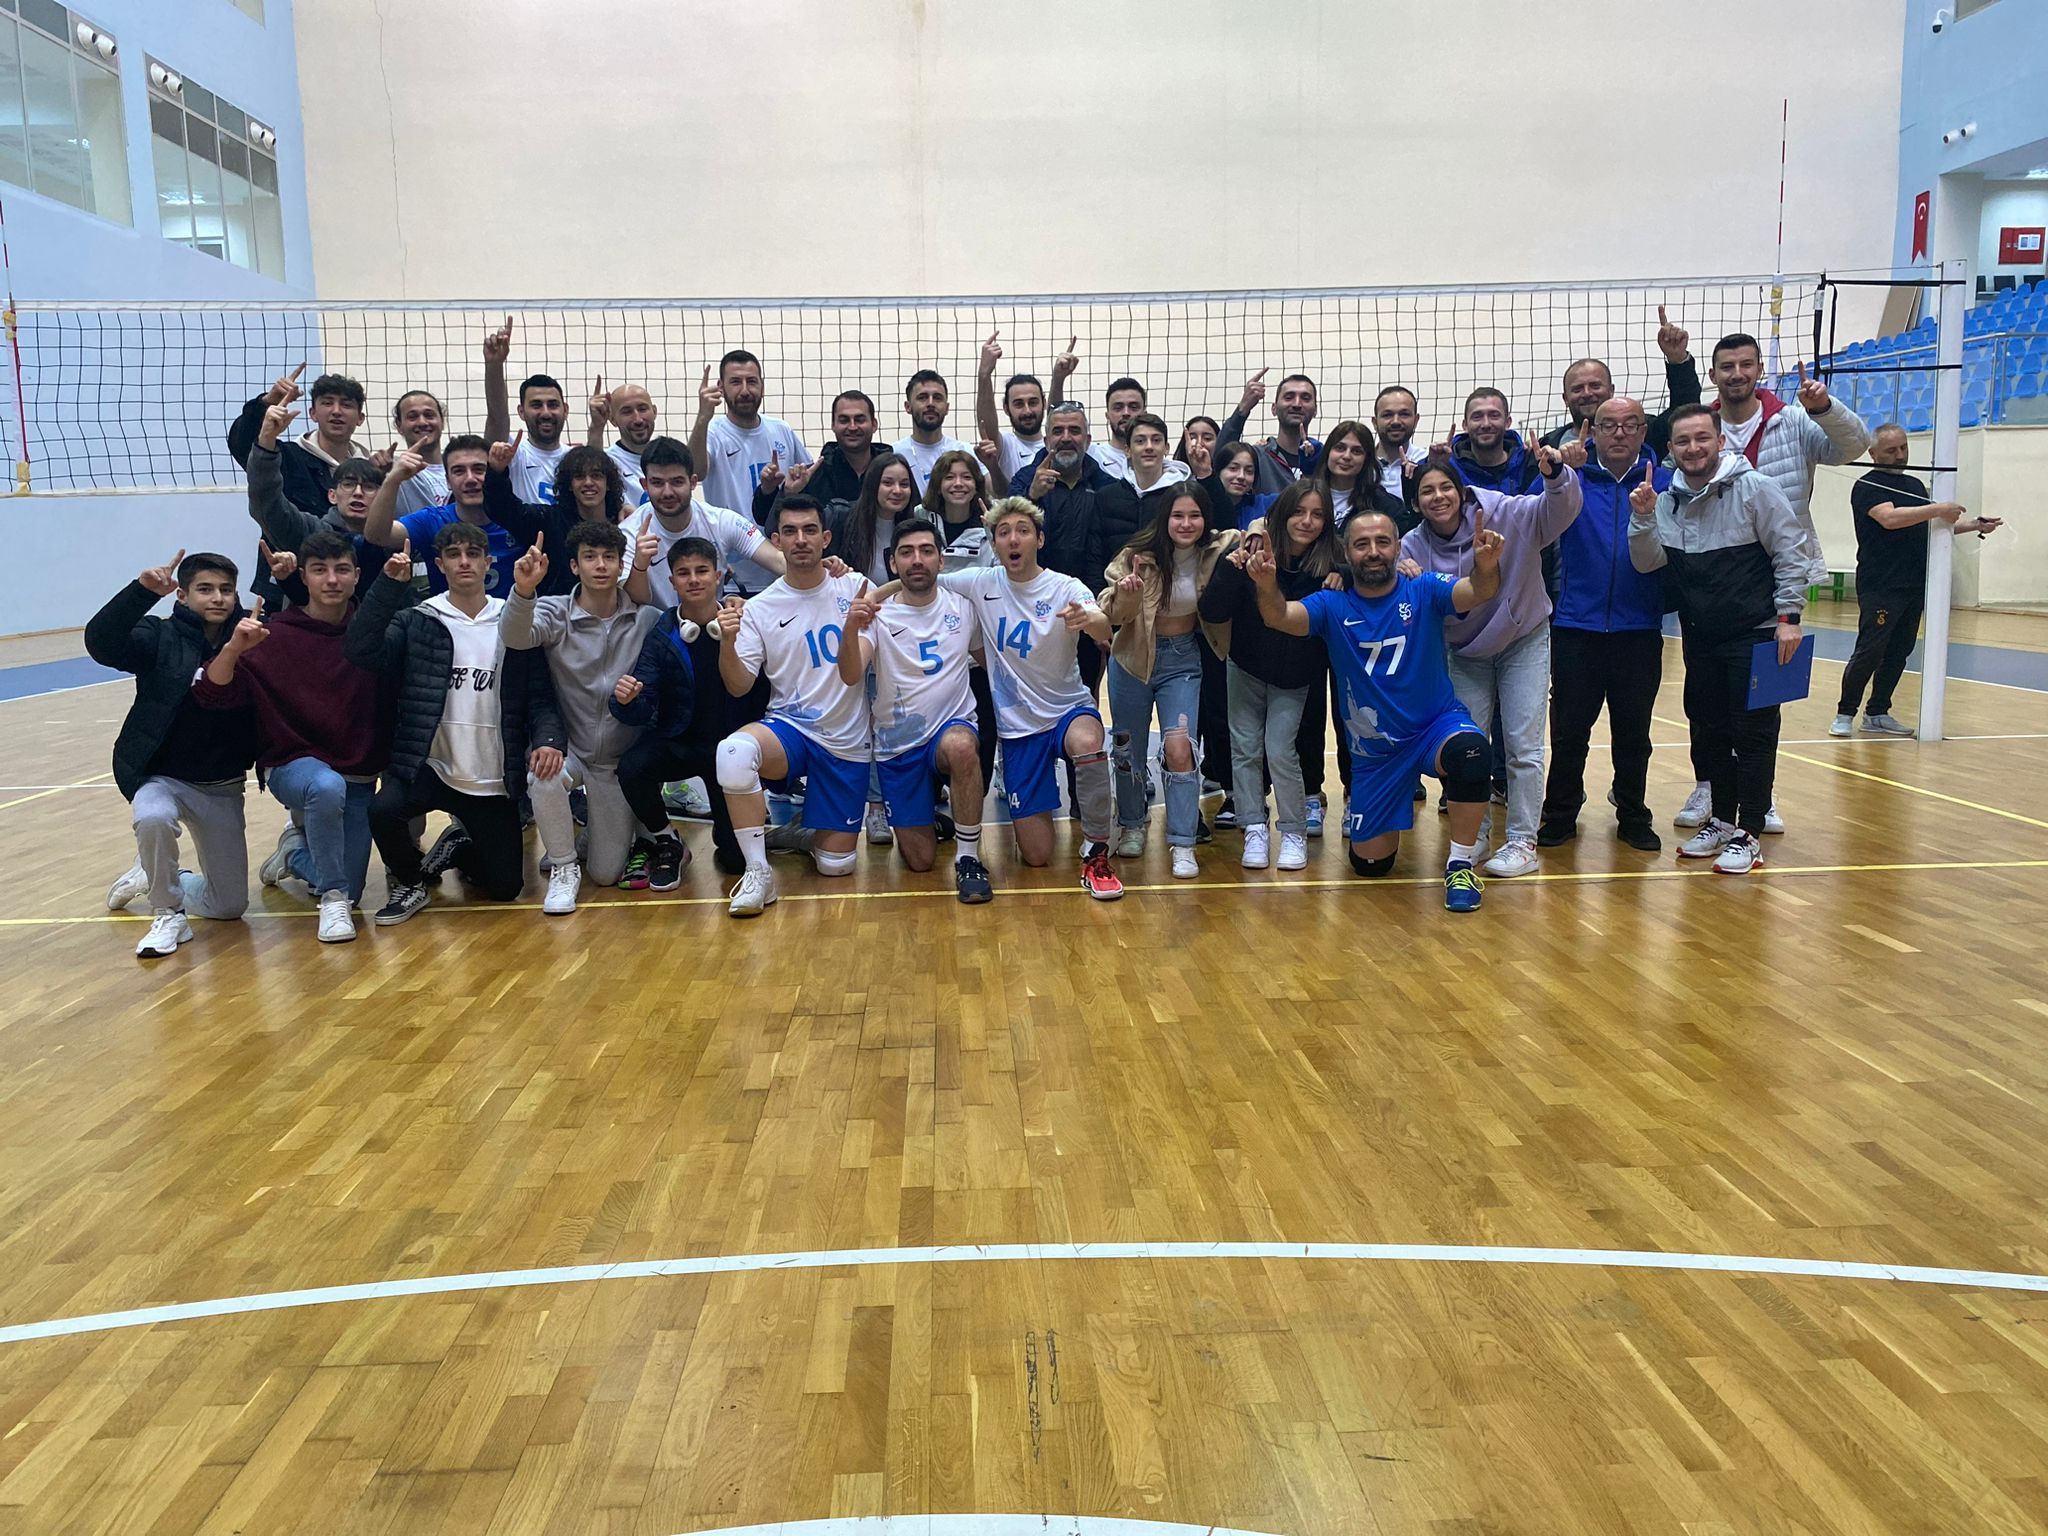 Düzce Belediyesi Spor Akademisi Voleybol Takımı, TVF 2. Lig’e yükseldi